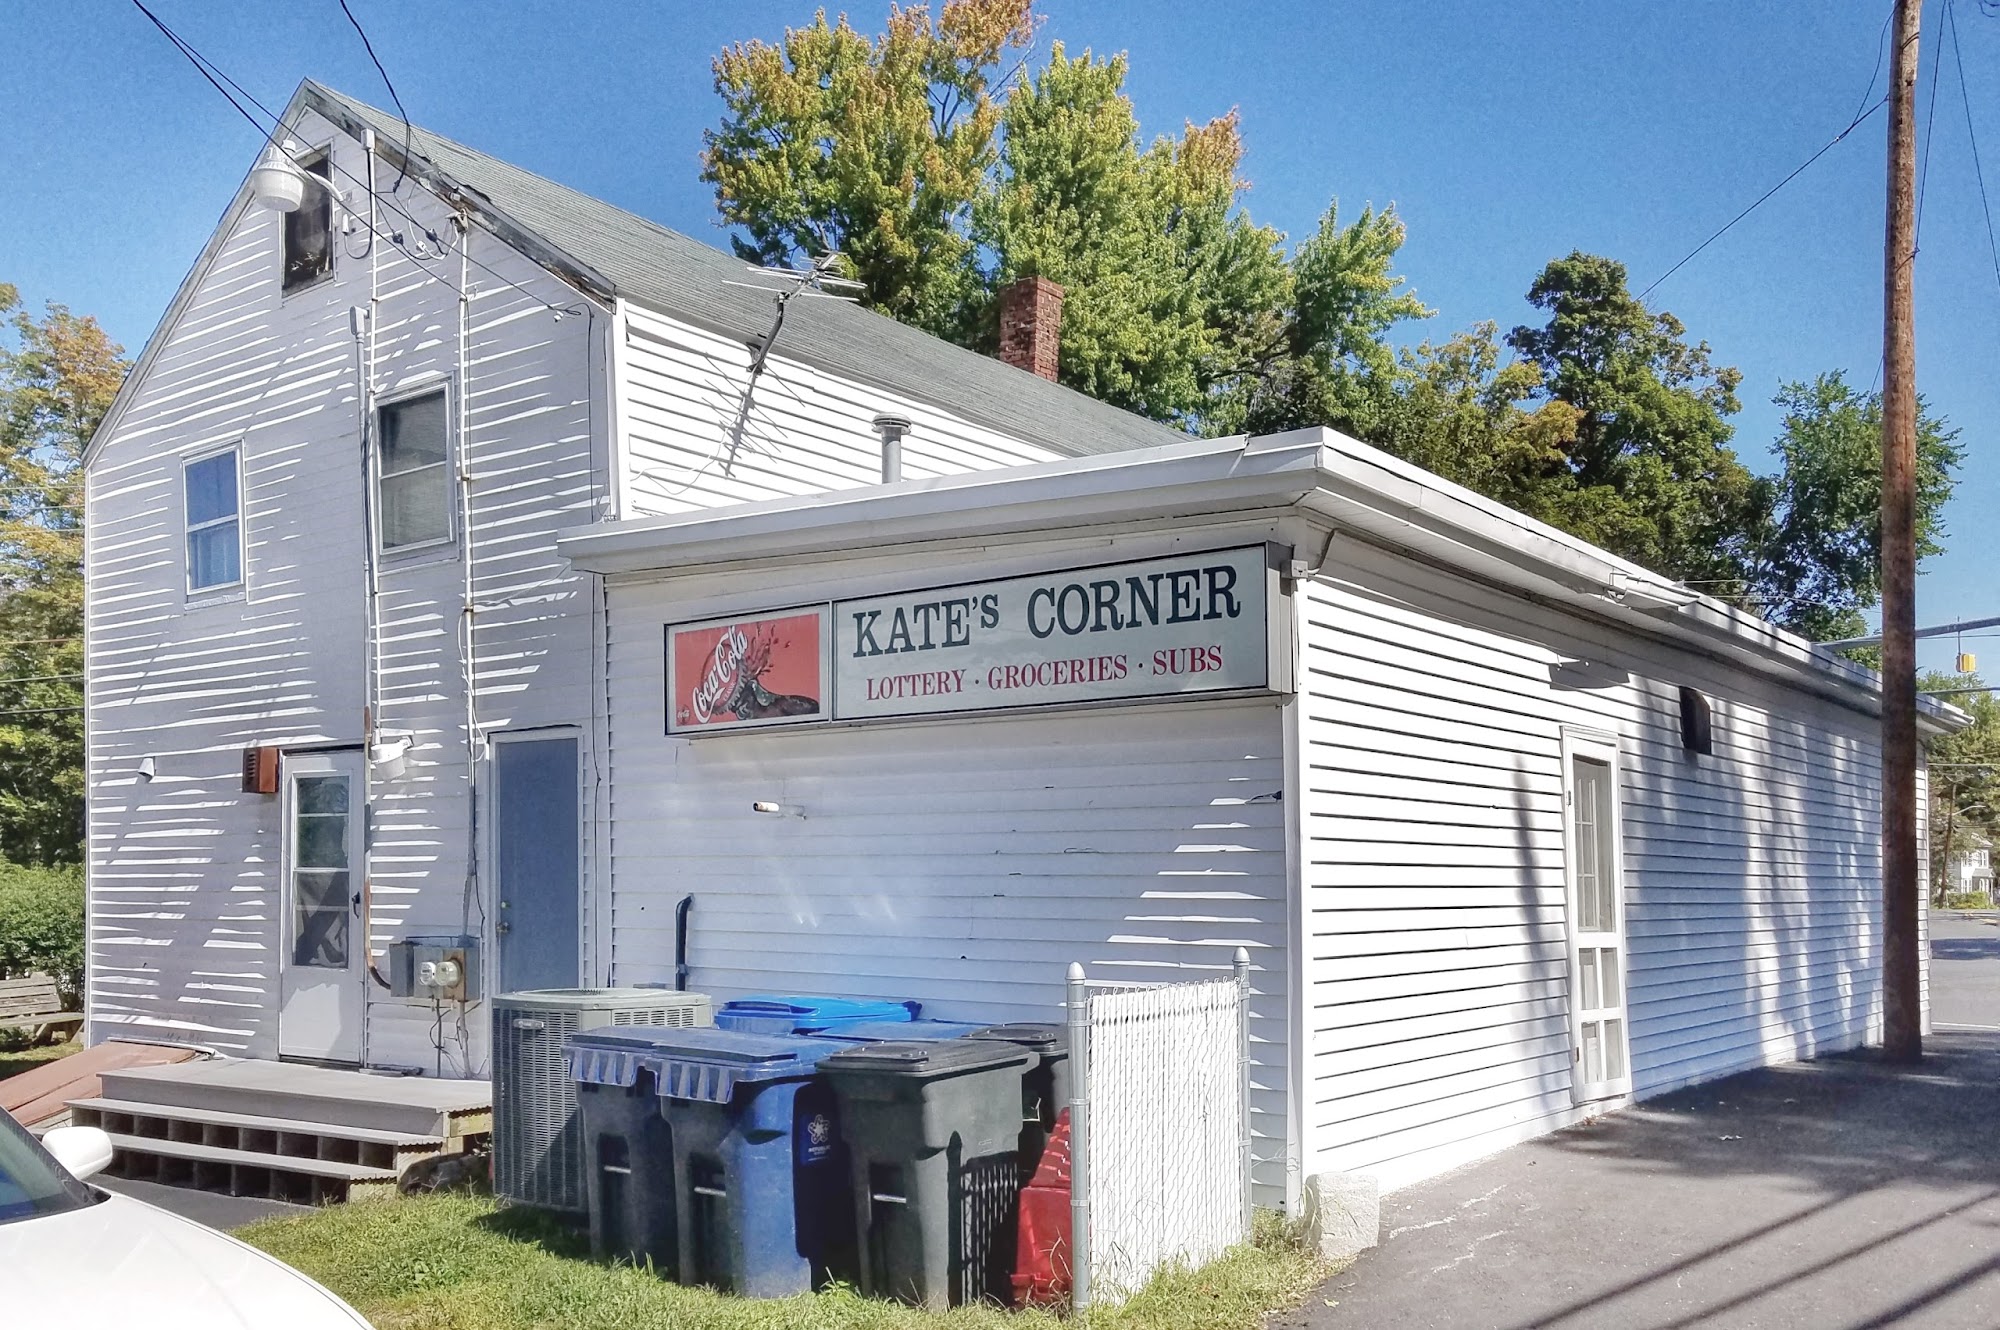 Kate's Corner